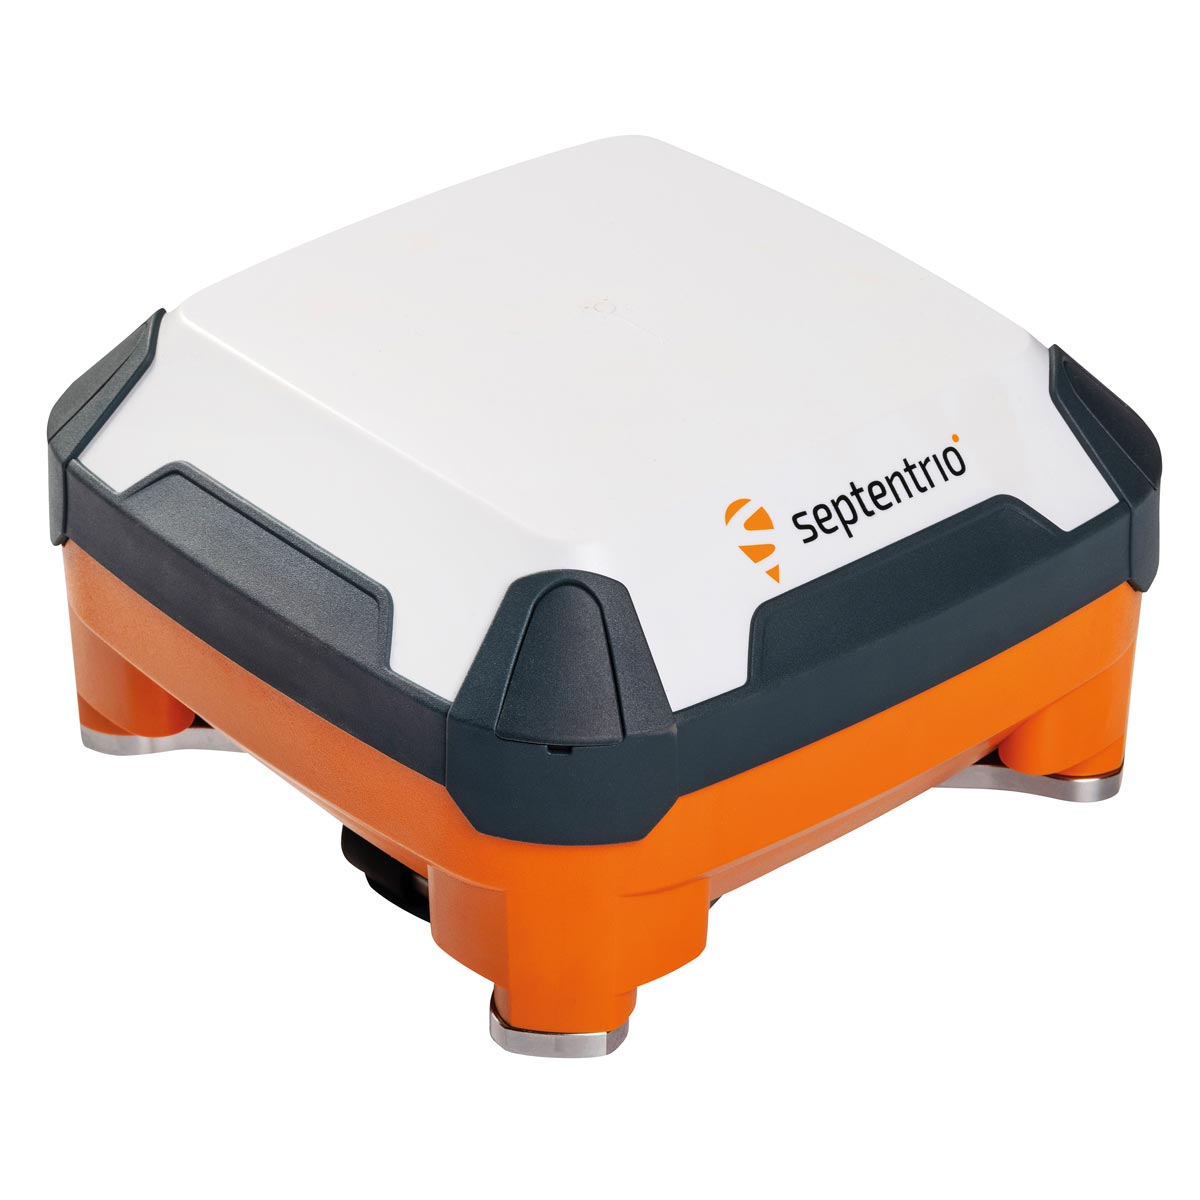 Robuste GNSS-Smartantenne AntaRx Si3 mit Neigungssensor von Septentrio